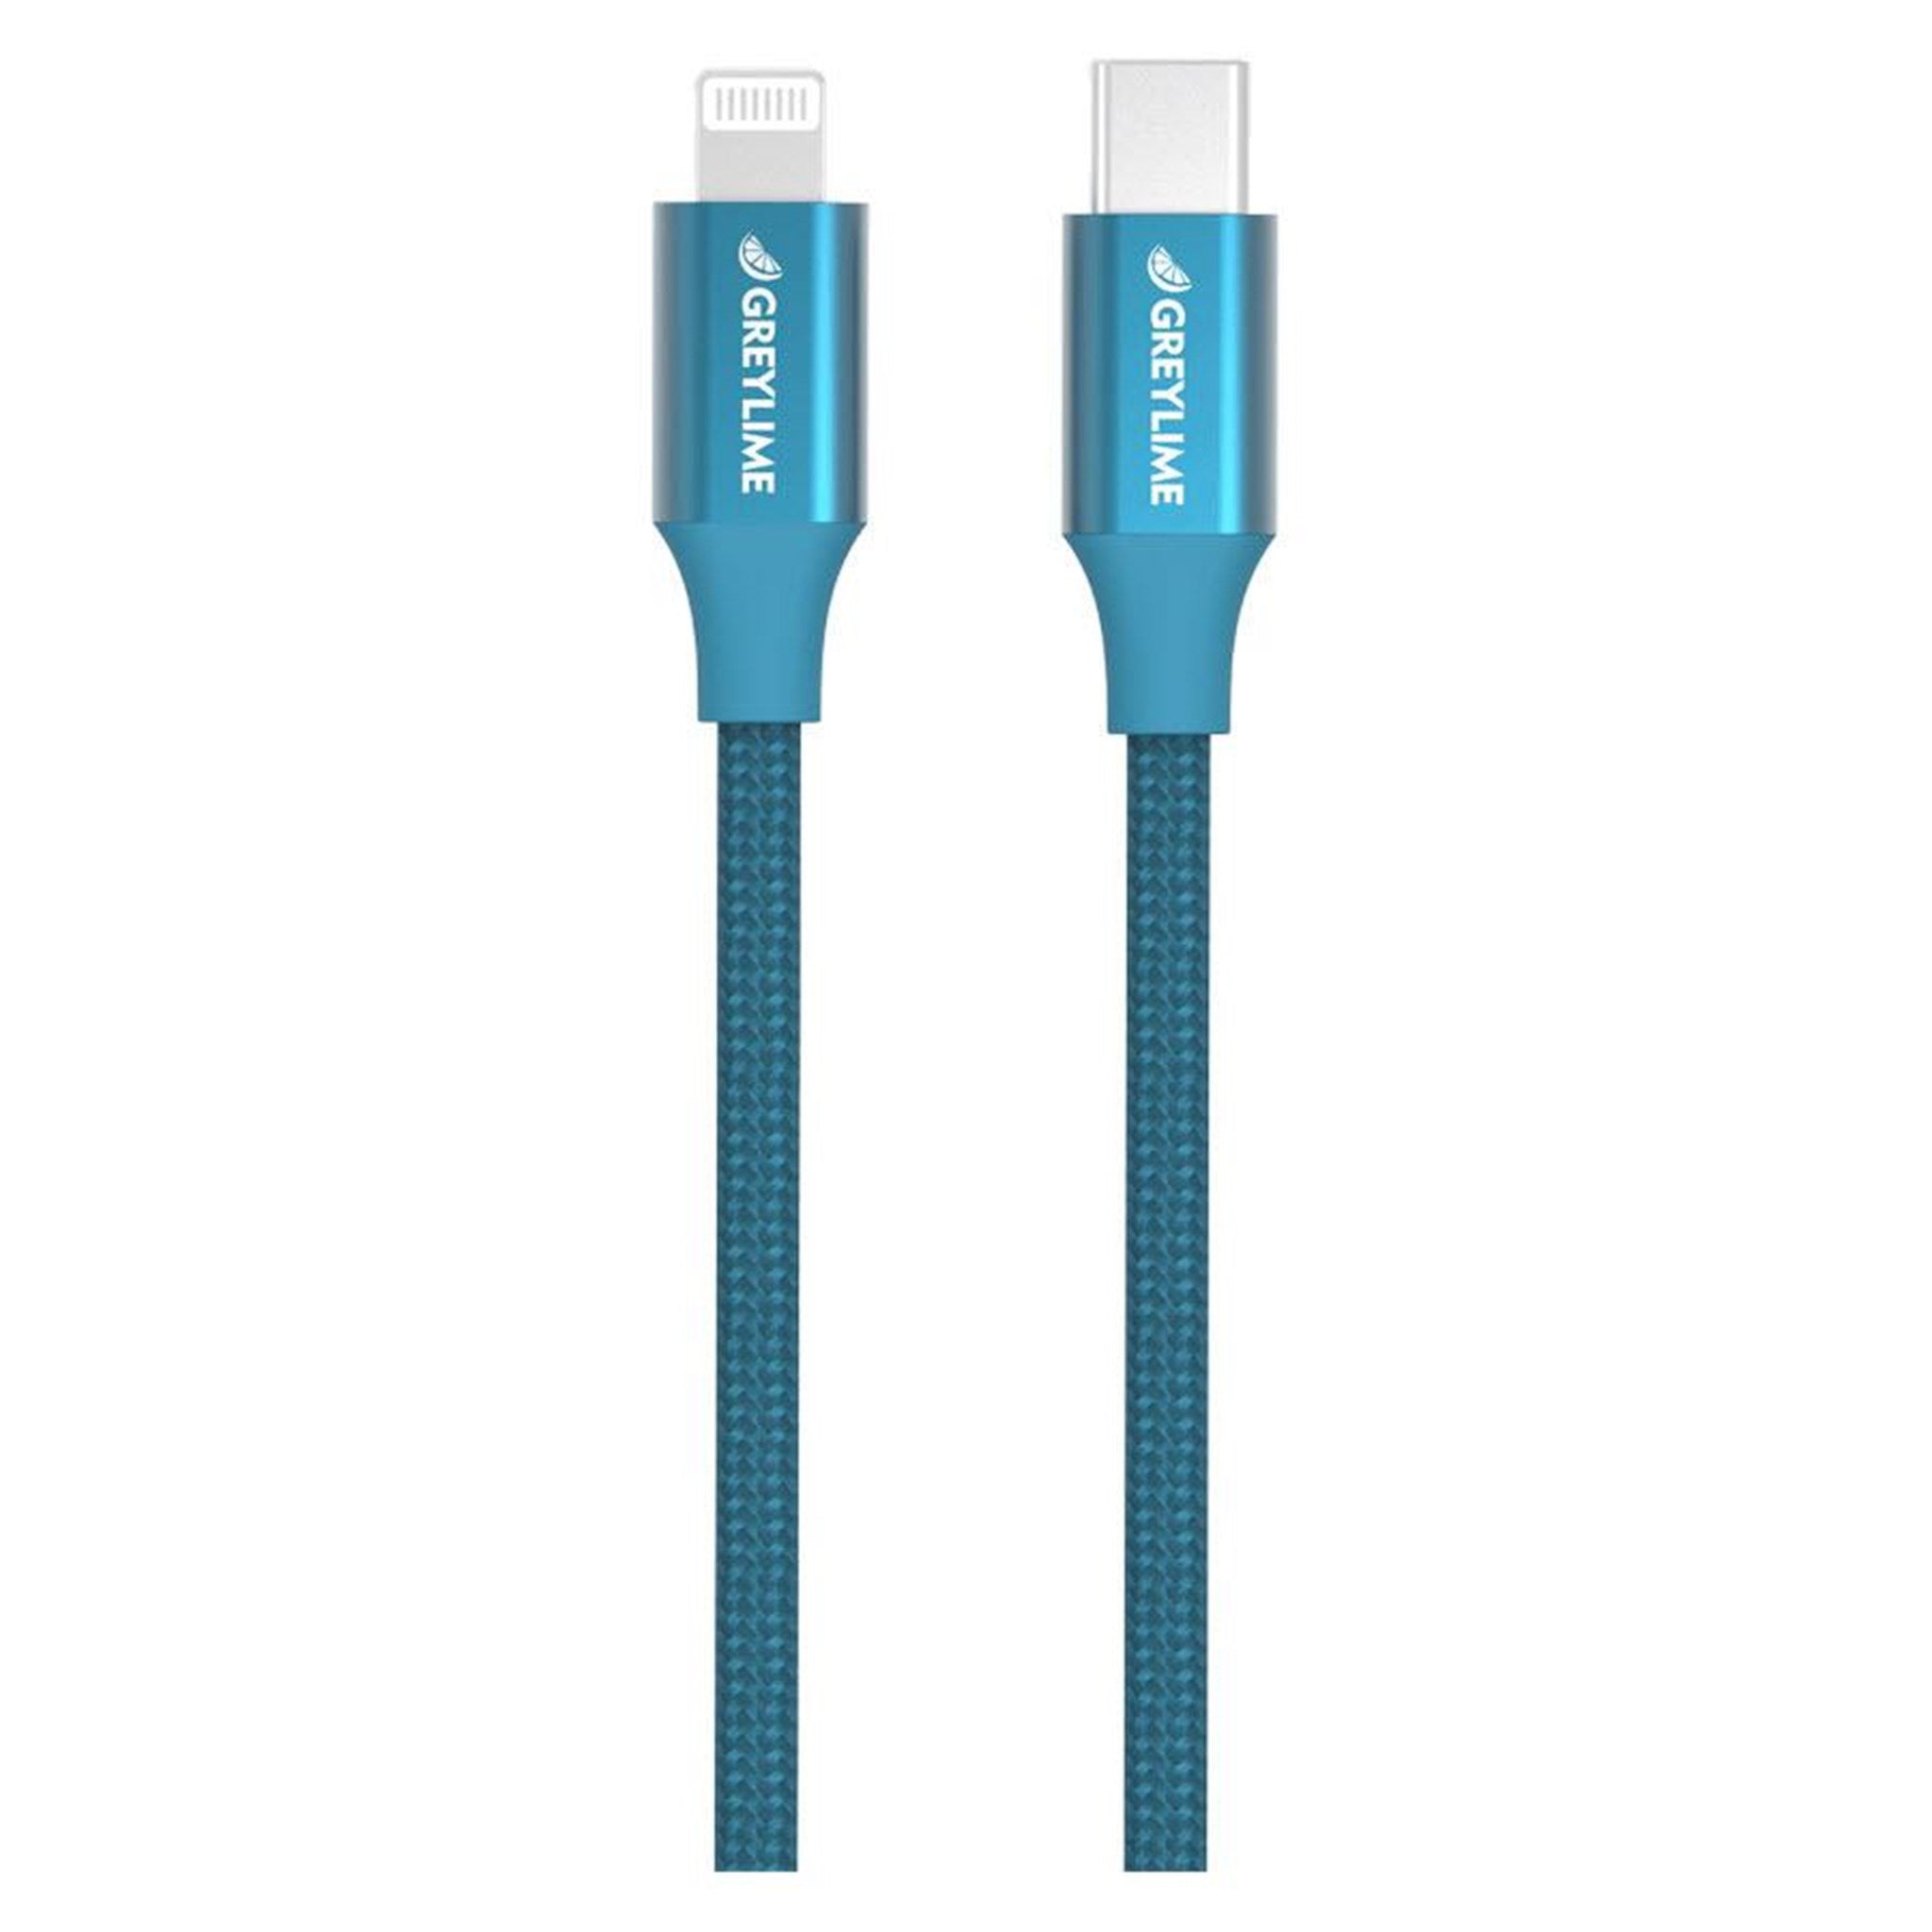 Billede af GreyLime Braided USB-C til MFi Lightning Kabel Blå 1 m hos GreyLime